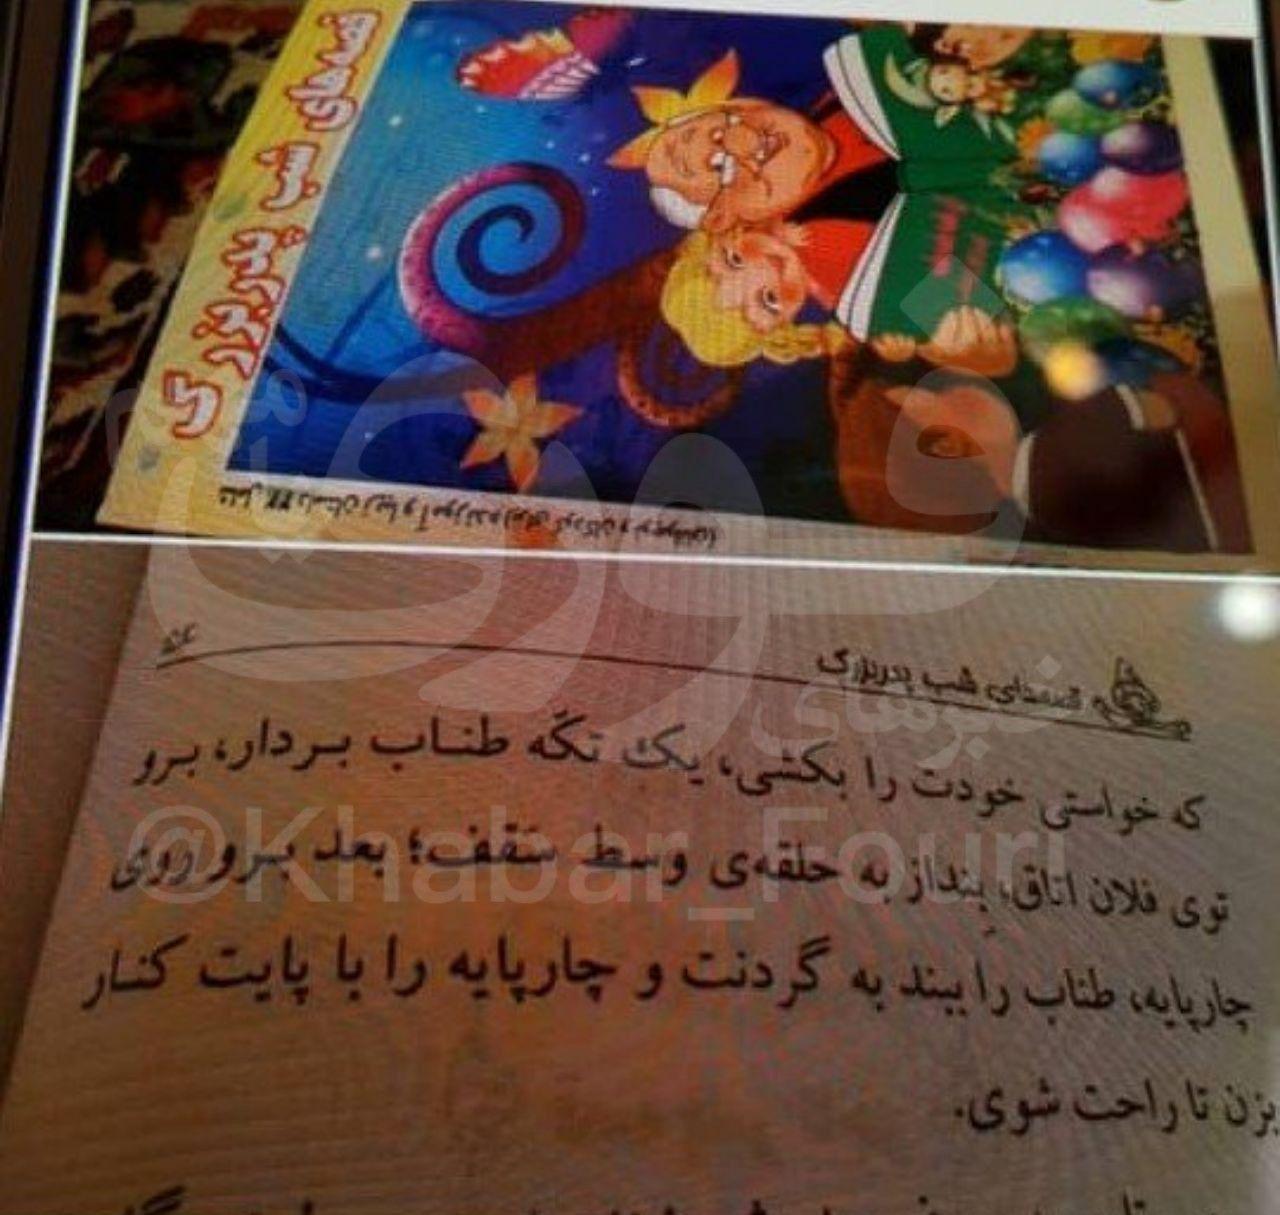 واکنش وزارت فرهنگ و ارشاد درباره آموزش خودکشی در یک کتاب کودک !